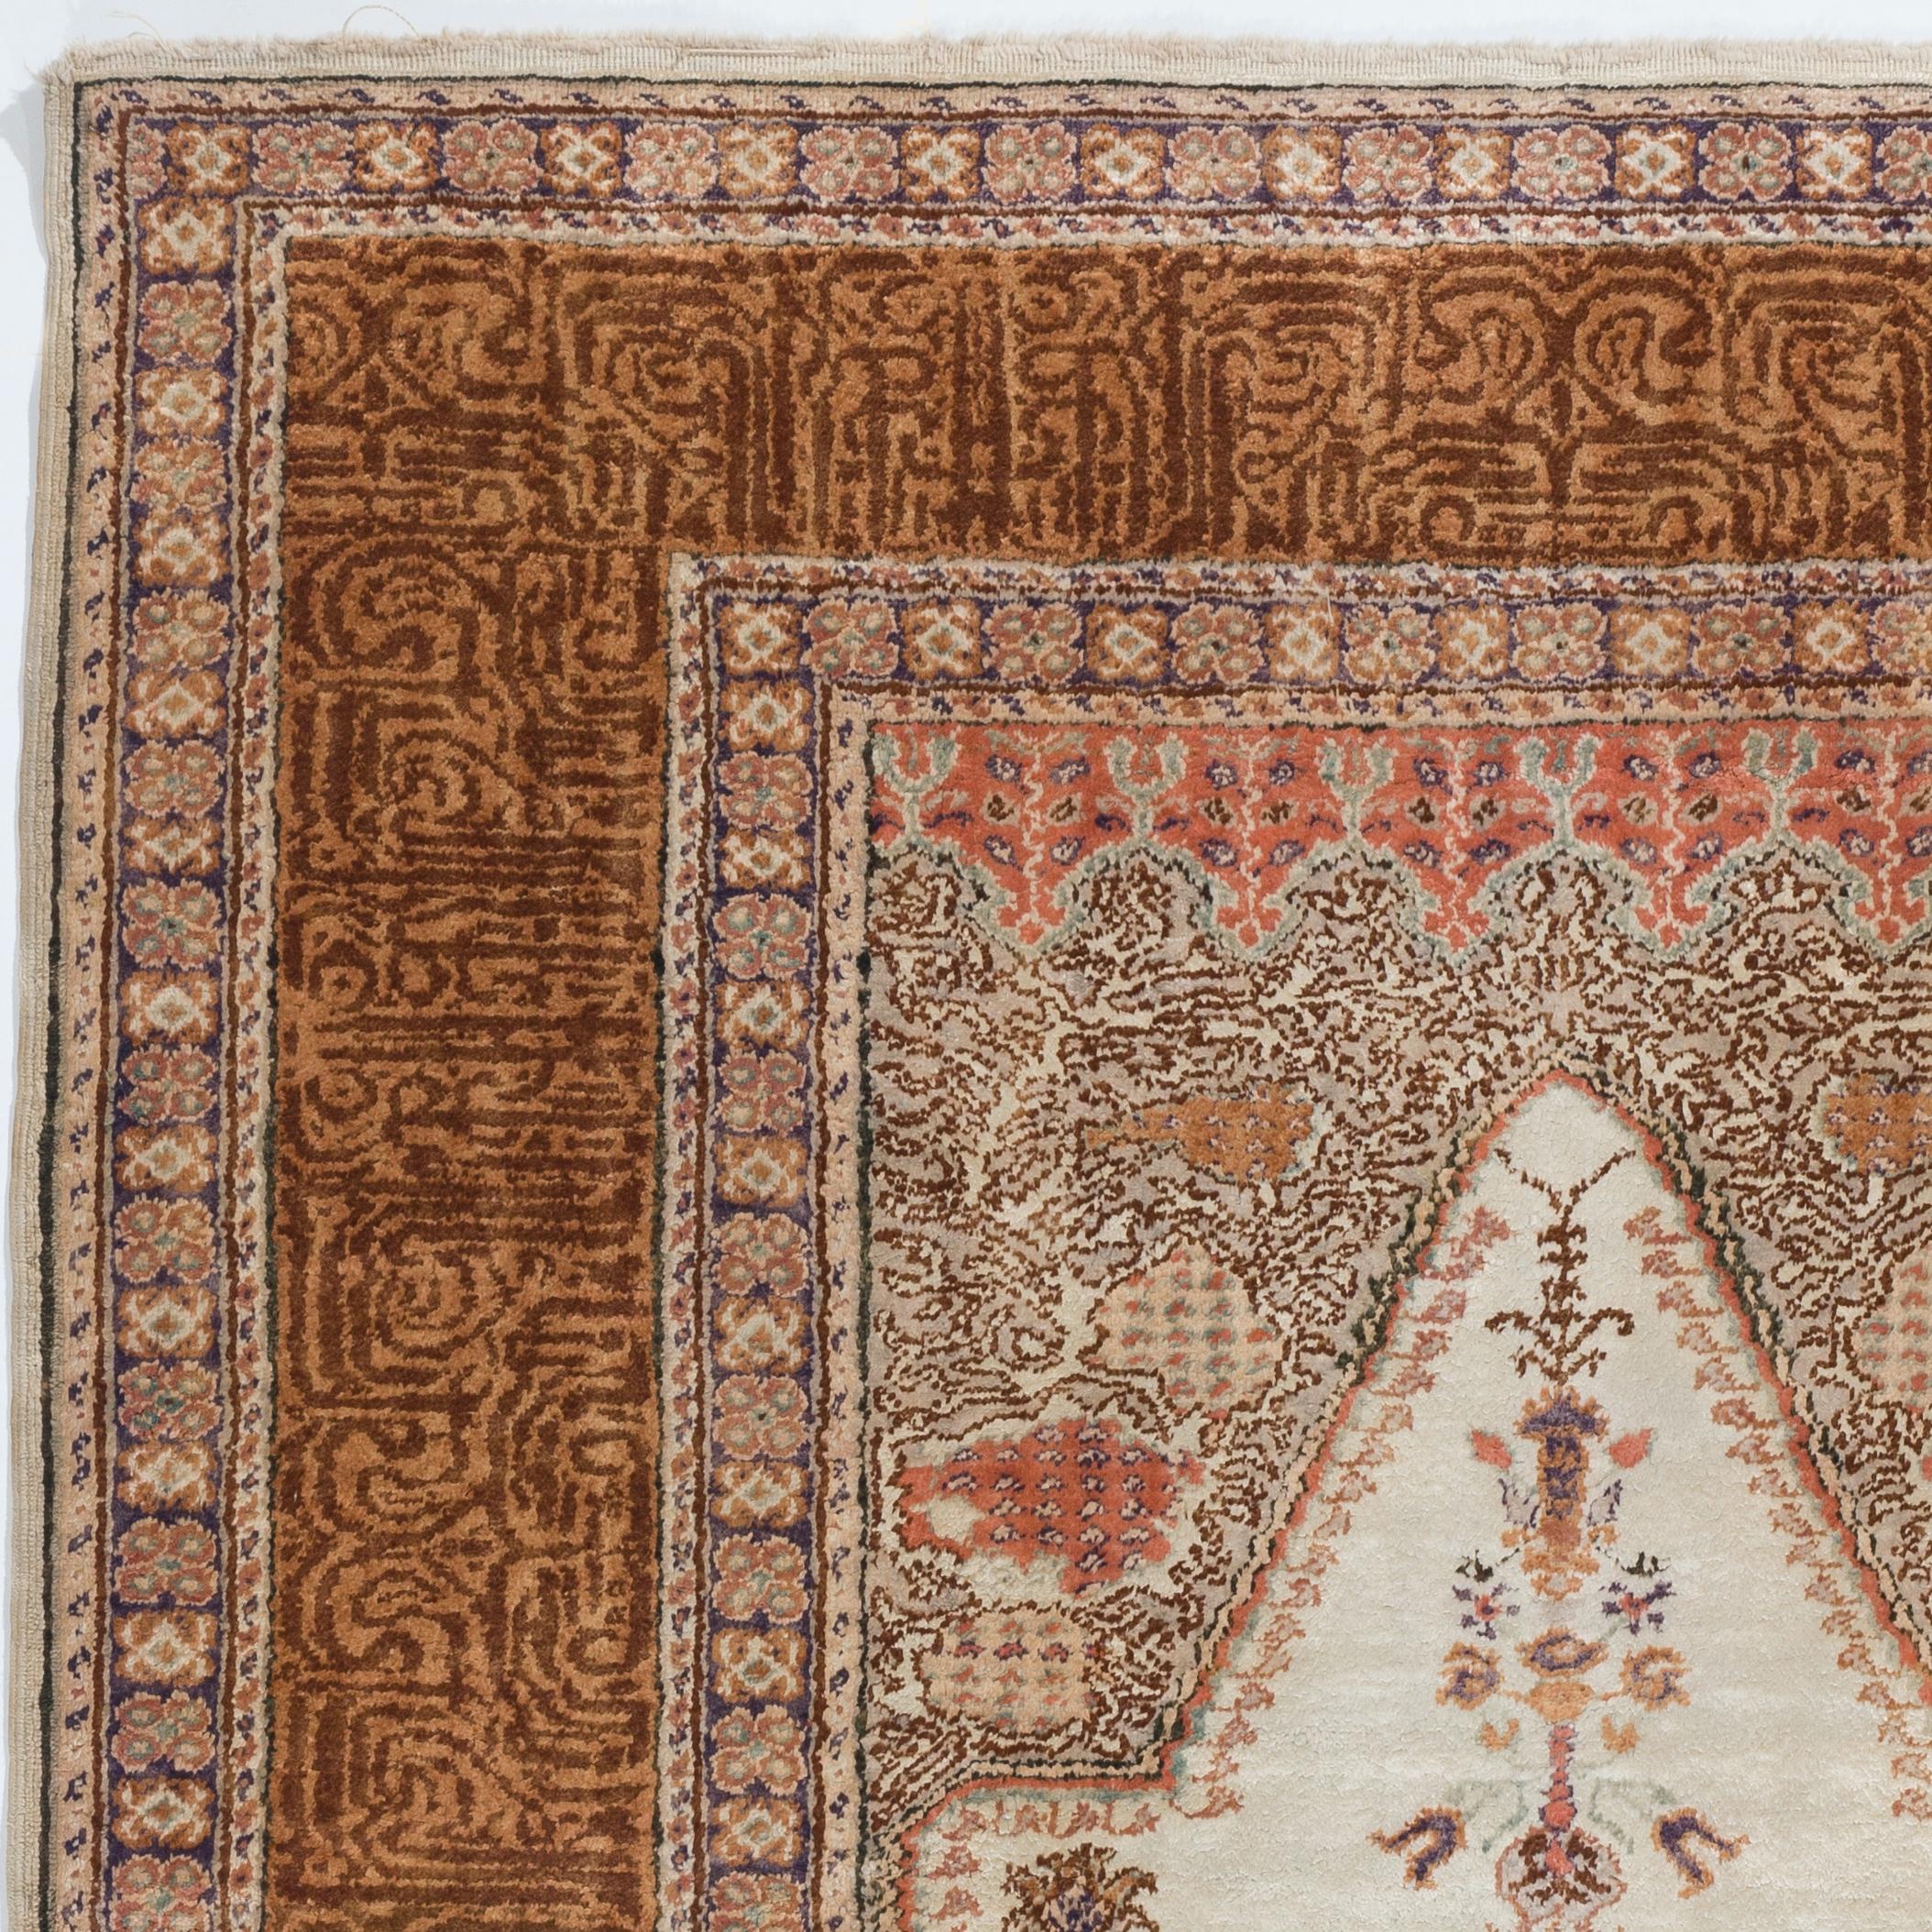 Ein nordwestanatolischer Nischenteppich des frühen 20. Jahrhunderts mit schönen Farben. Fein handgeknüpft mit gleichmäßigem, mittelhohem Kunstseidenflor auf Baumwollgrund. Sehr guter Zustand. Robust und so sauber wie ein nagelneuer Teppich